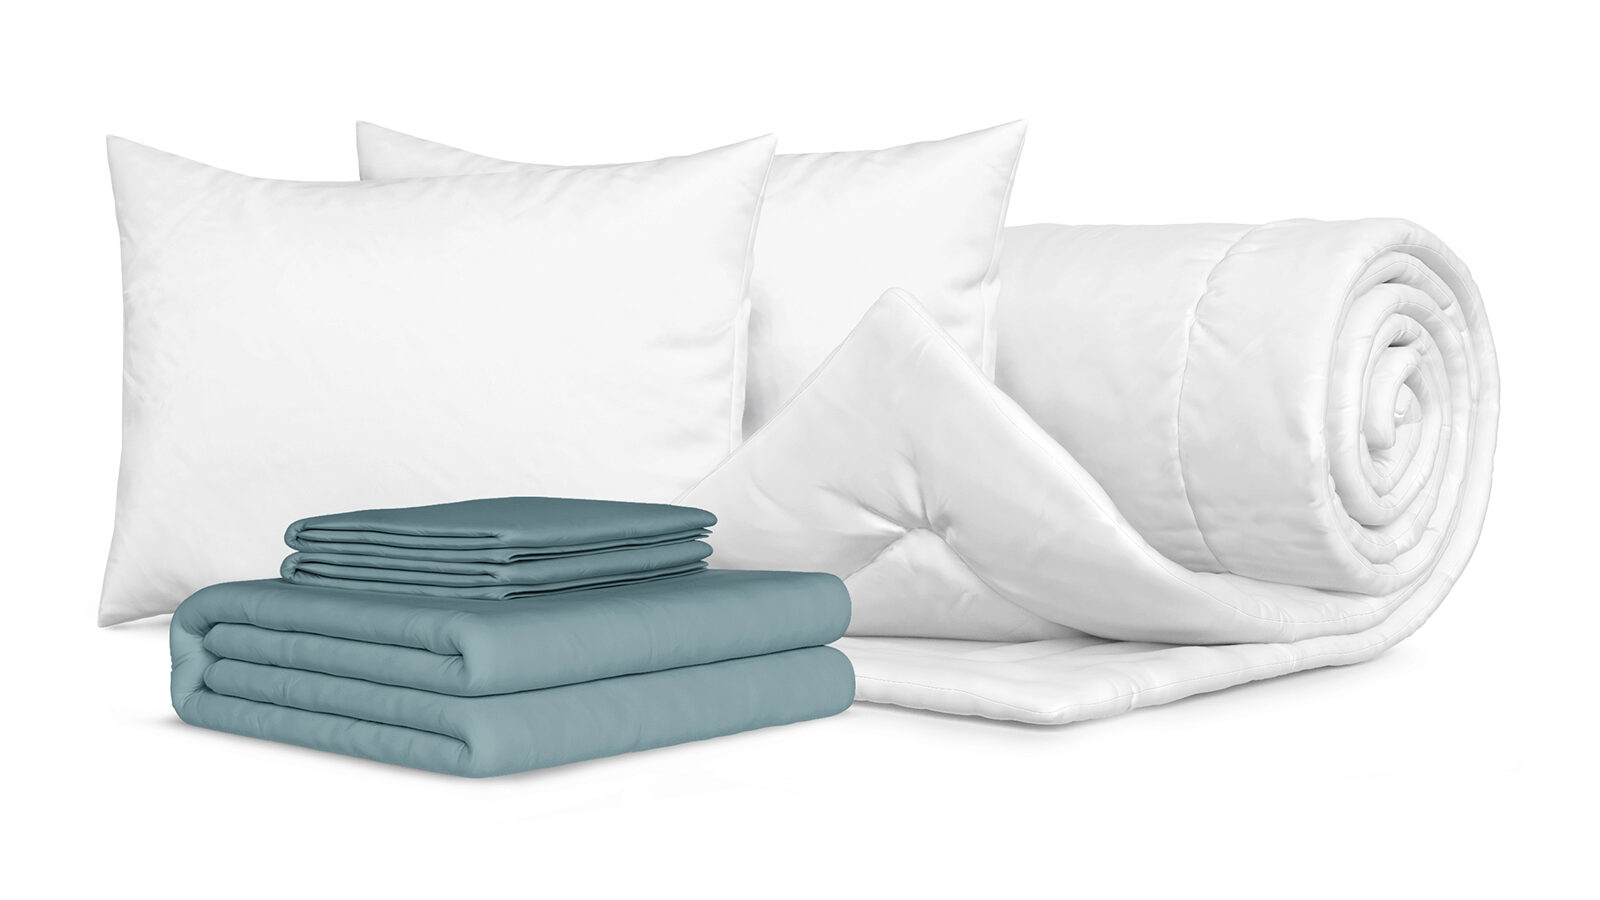 Комплект Одеяло Beat + 2 Подушка Sky + Комплект постельного белья Comfort Cotton, цвет: Серо-голубой